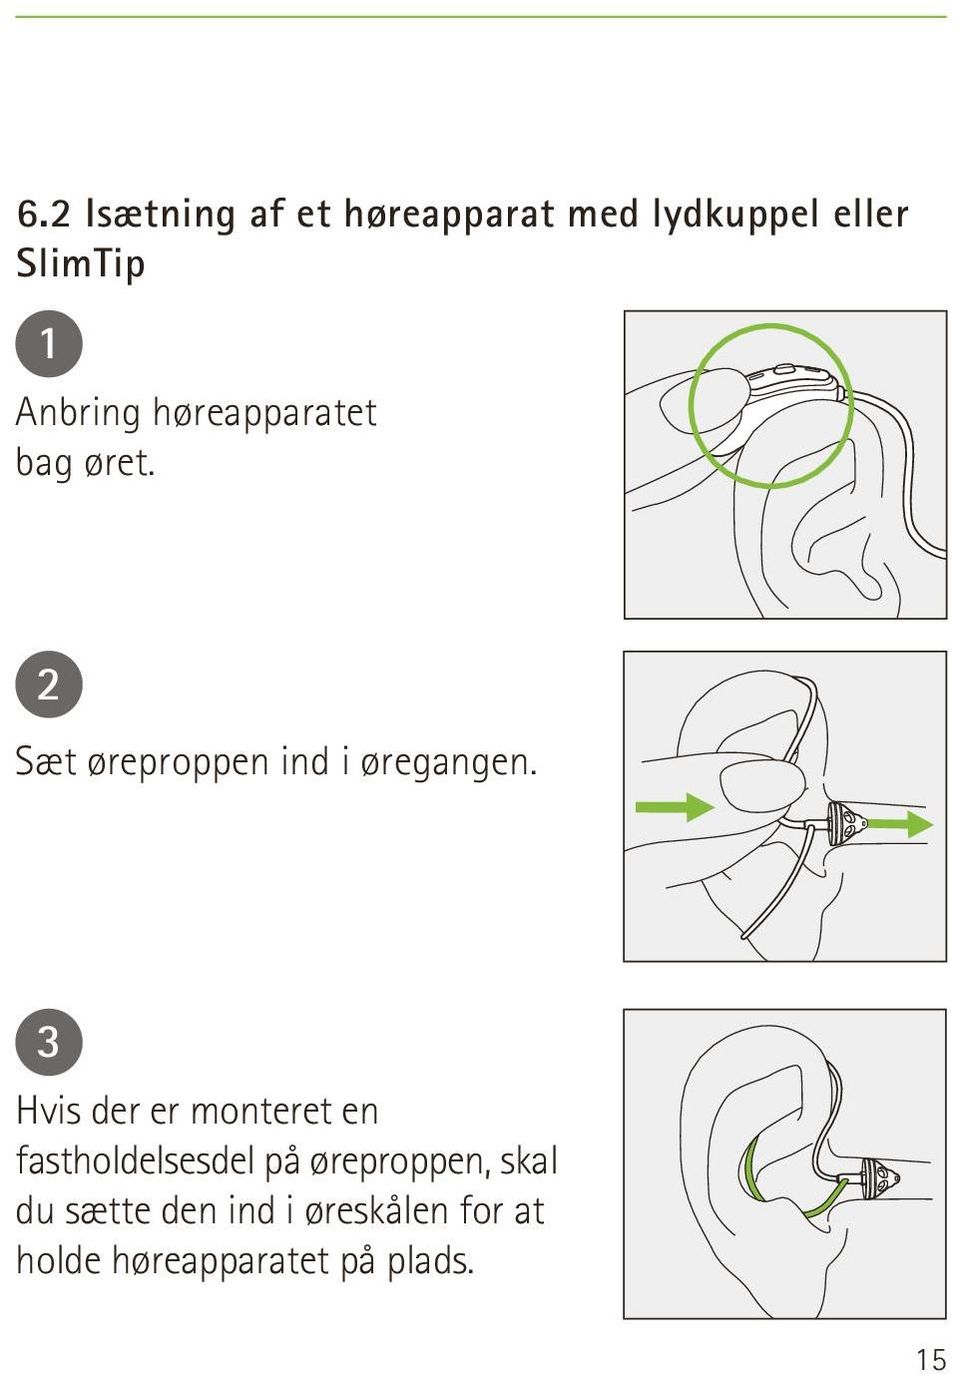 3 Hvis der er monteret en fastholdelsesdel på øreproppen, skal